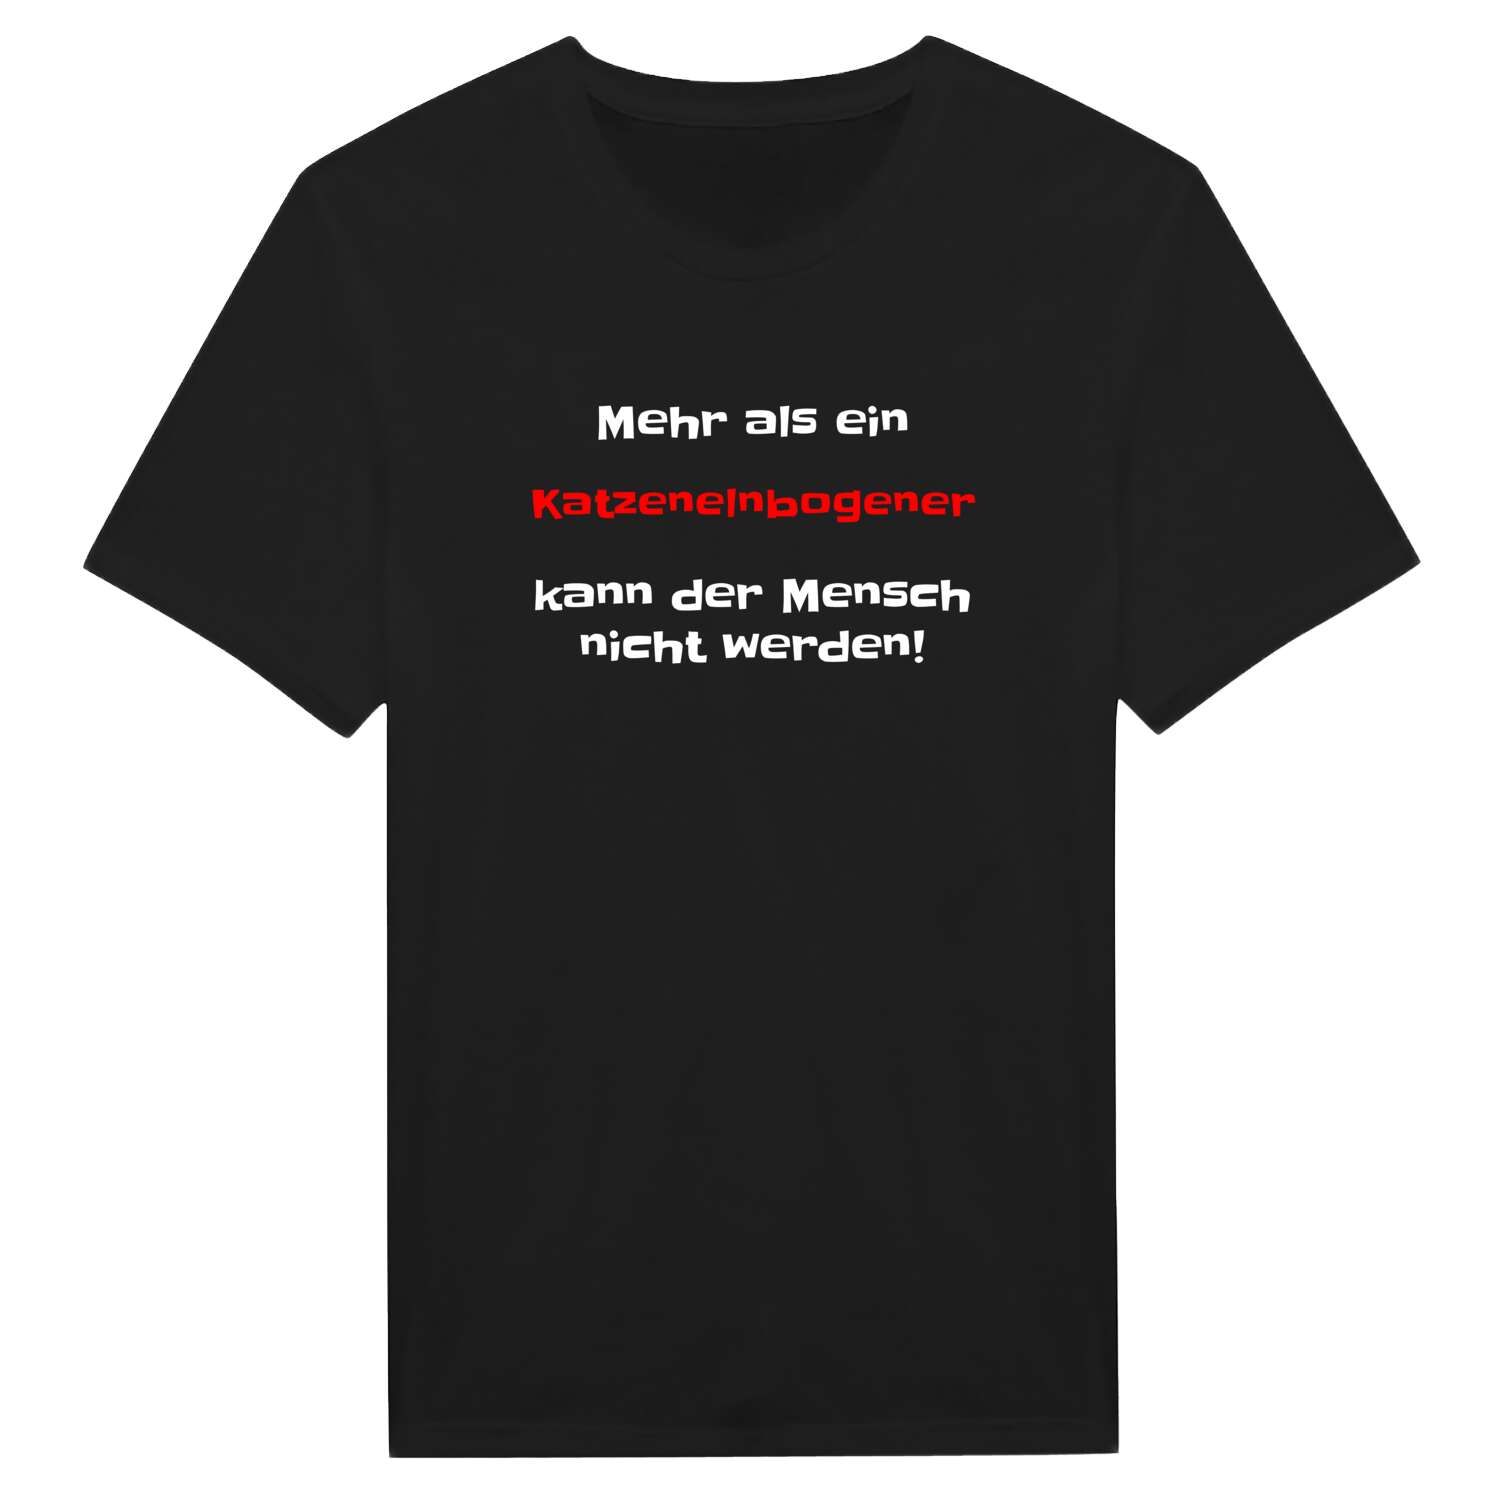 Katzenelnbogen T-Shirt »Mehr als ein«